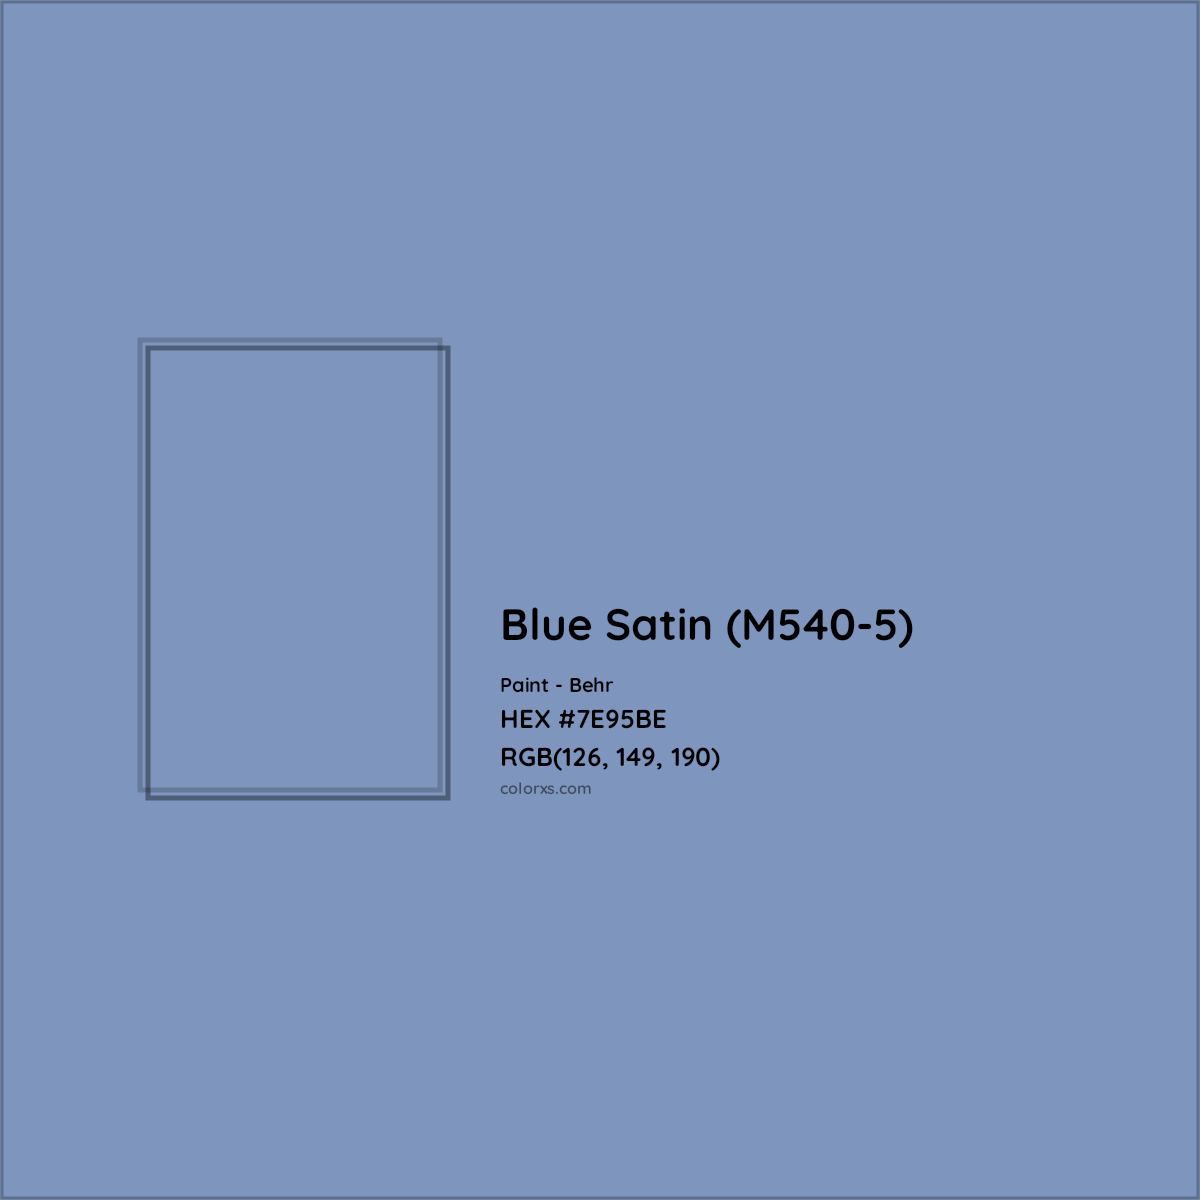 HEX #7E95BE Blue Satin (M540-5) Paint Behr - Color Code